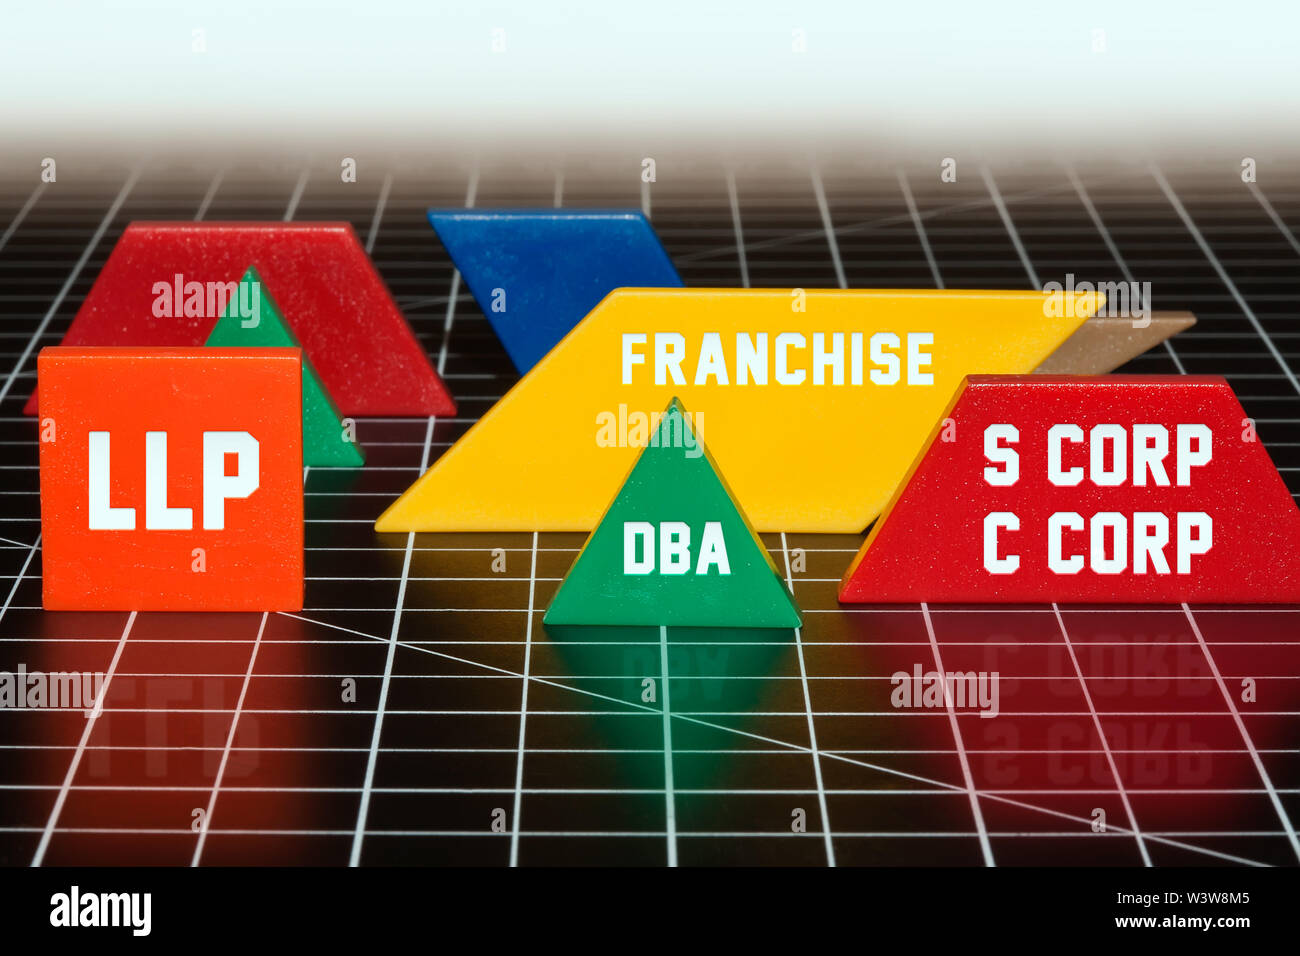 Tipos de estructuras empresariales que dominan el mercado, LLP, DBA, franquicias, S corp y C Corporation. Foto de stock